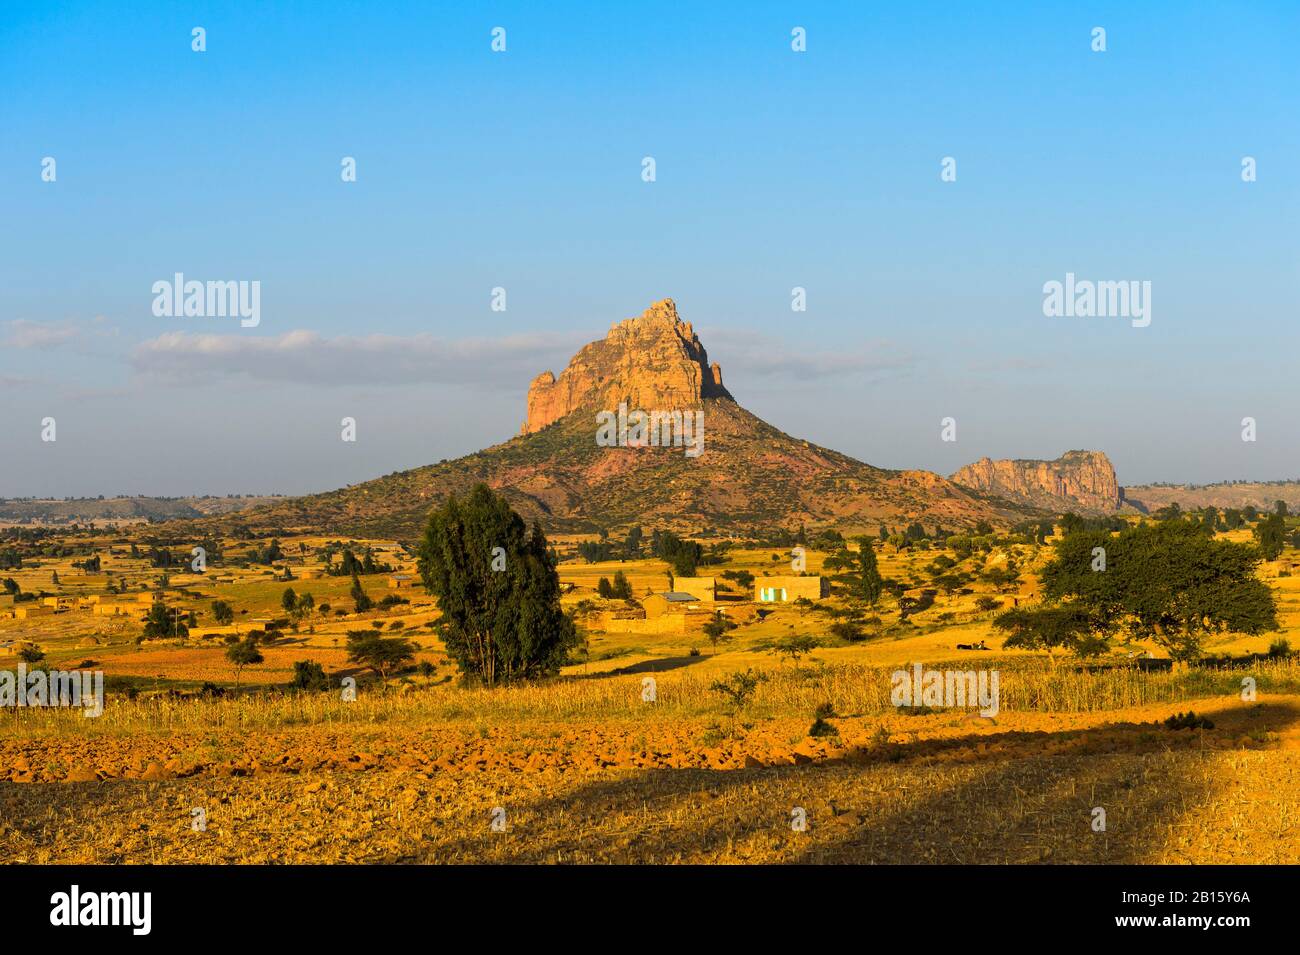 Paysage avec montagne érodée à plateau plat, Amba, dans les hautes-terres éthiopiennes, Tigray, Ethiopie Banque D'Images